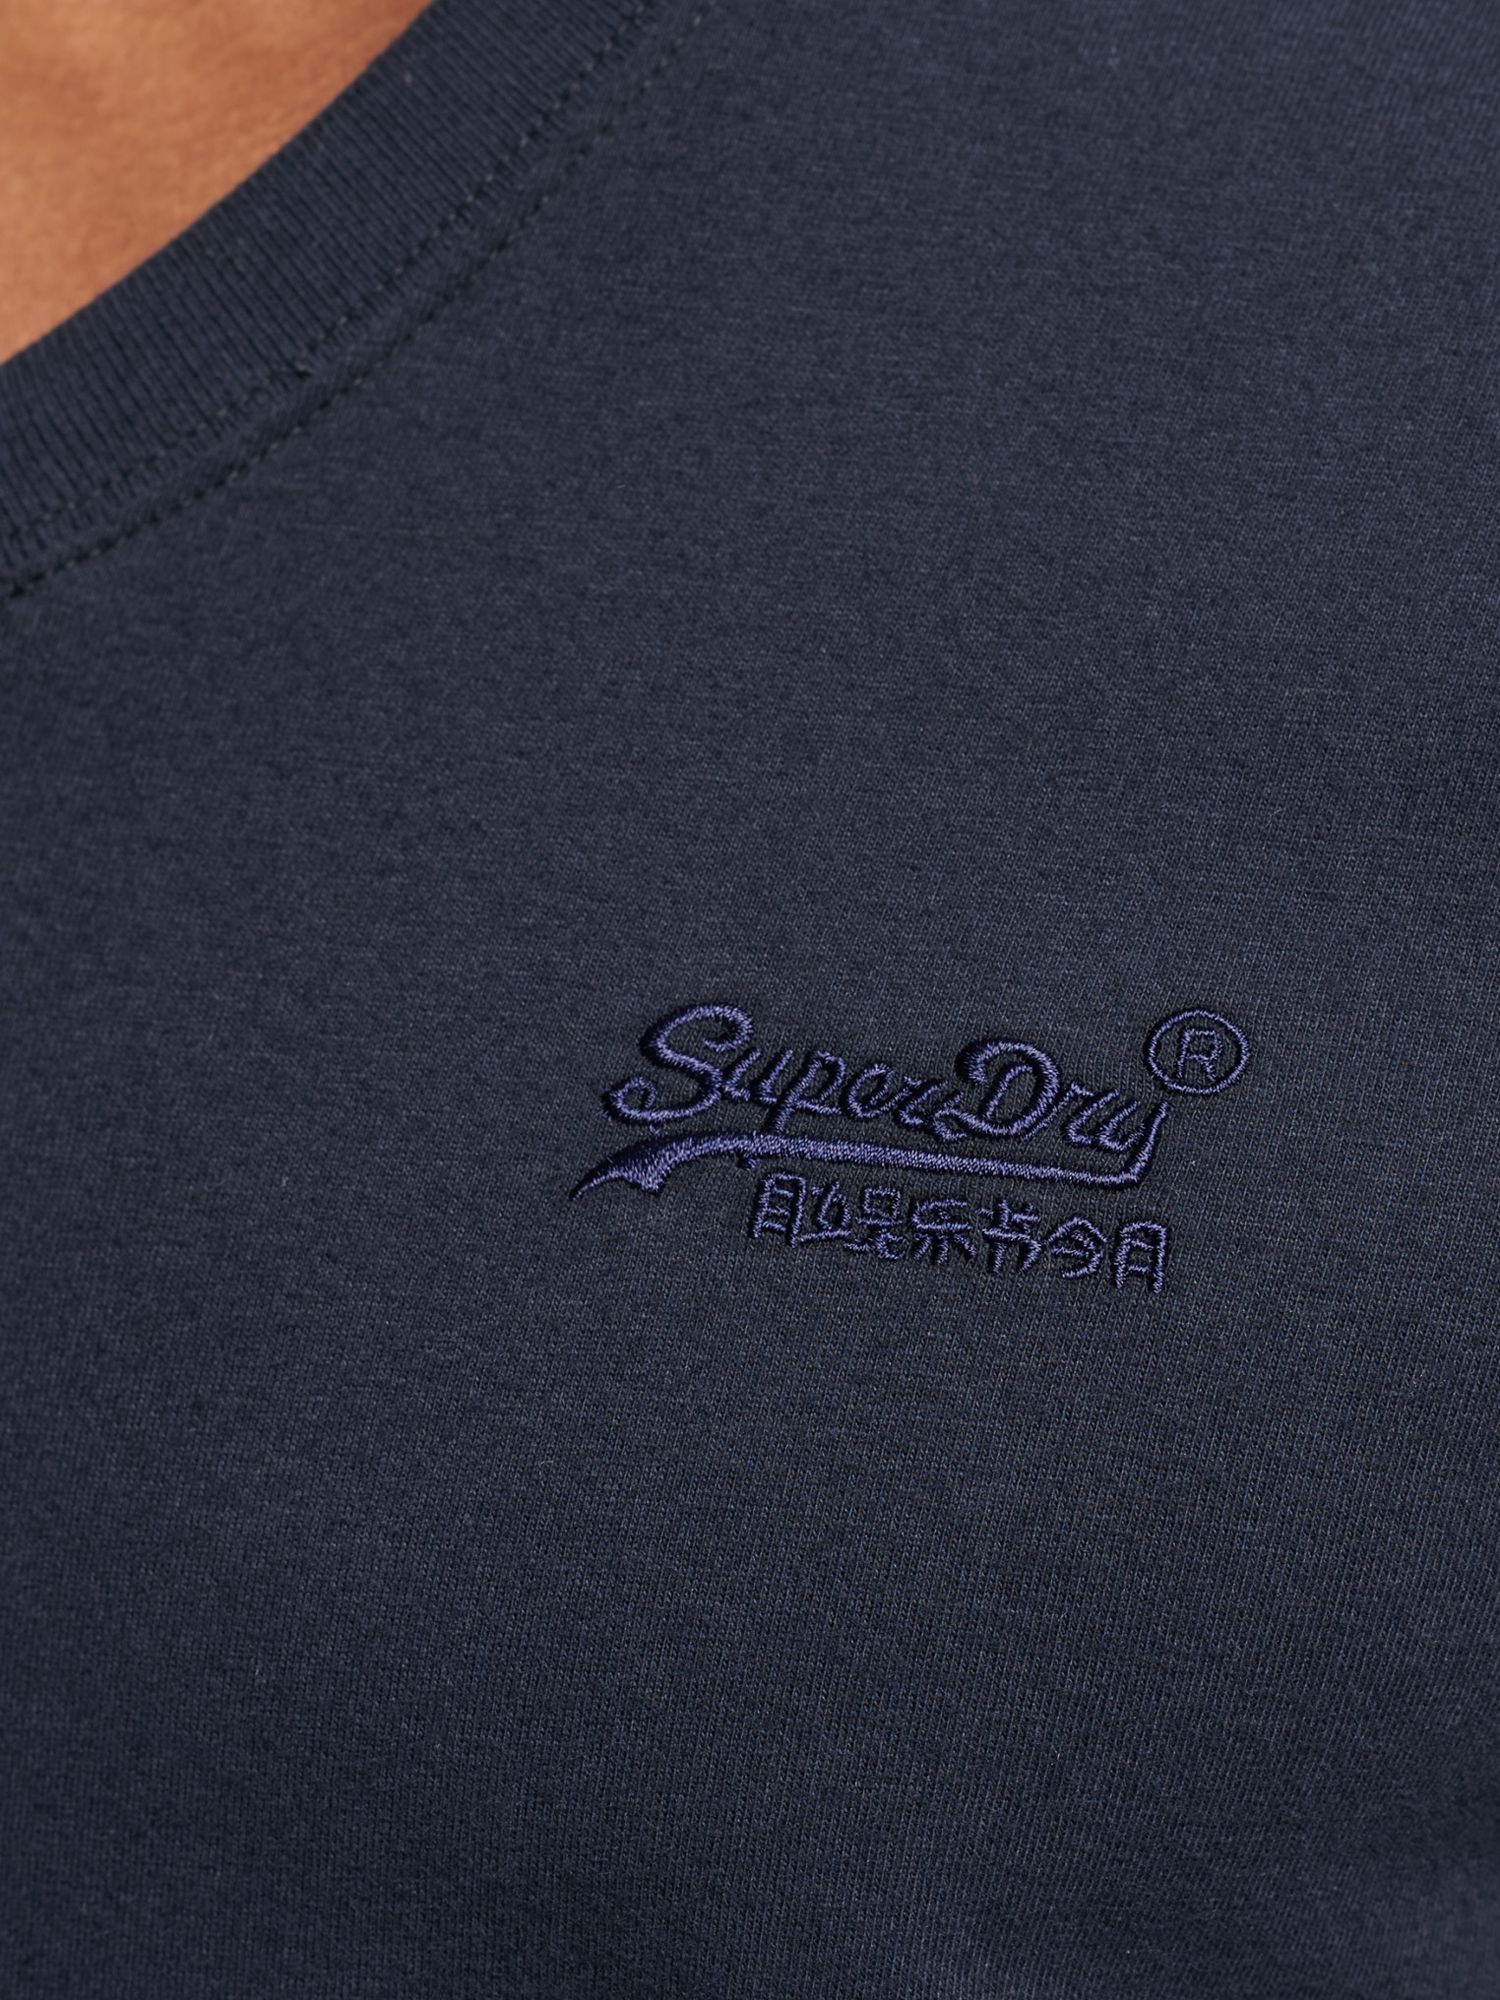 Buy Superdry Organic Cotton Vintage Logo V-Neck T-Shirt Online at johnlewis.com